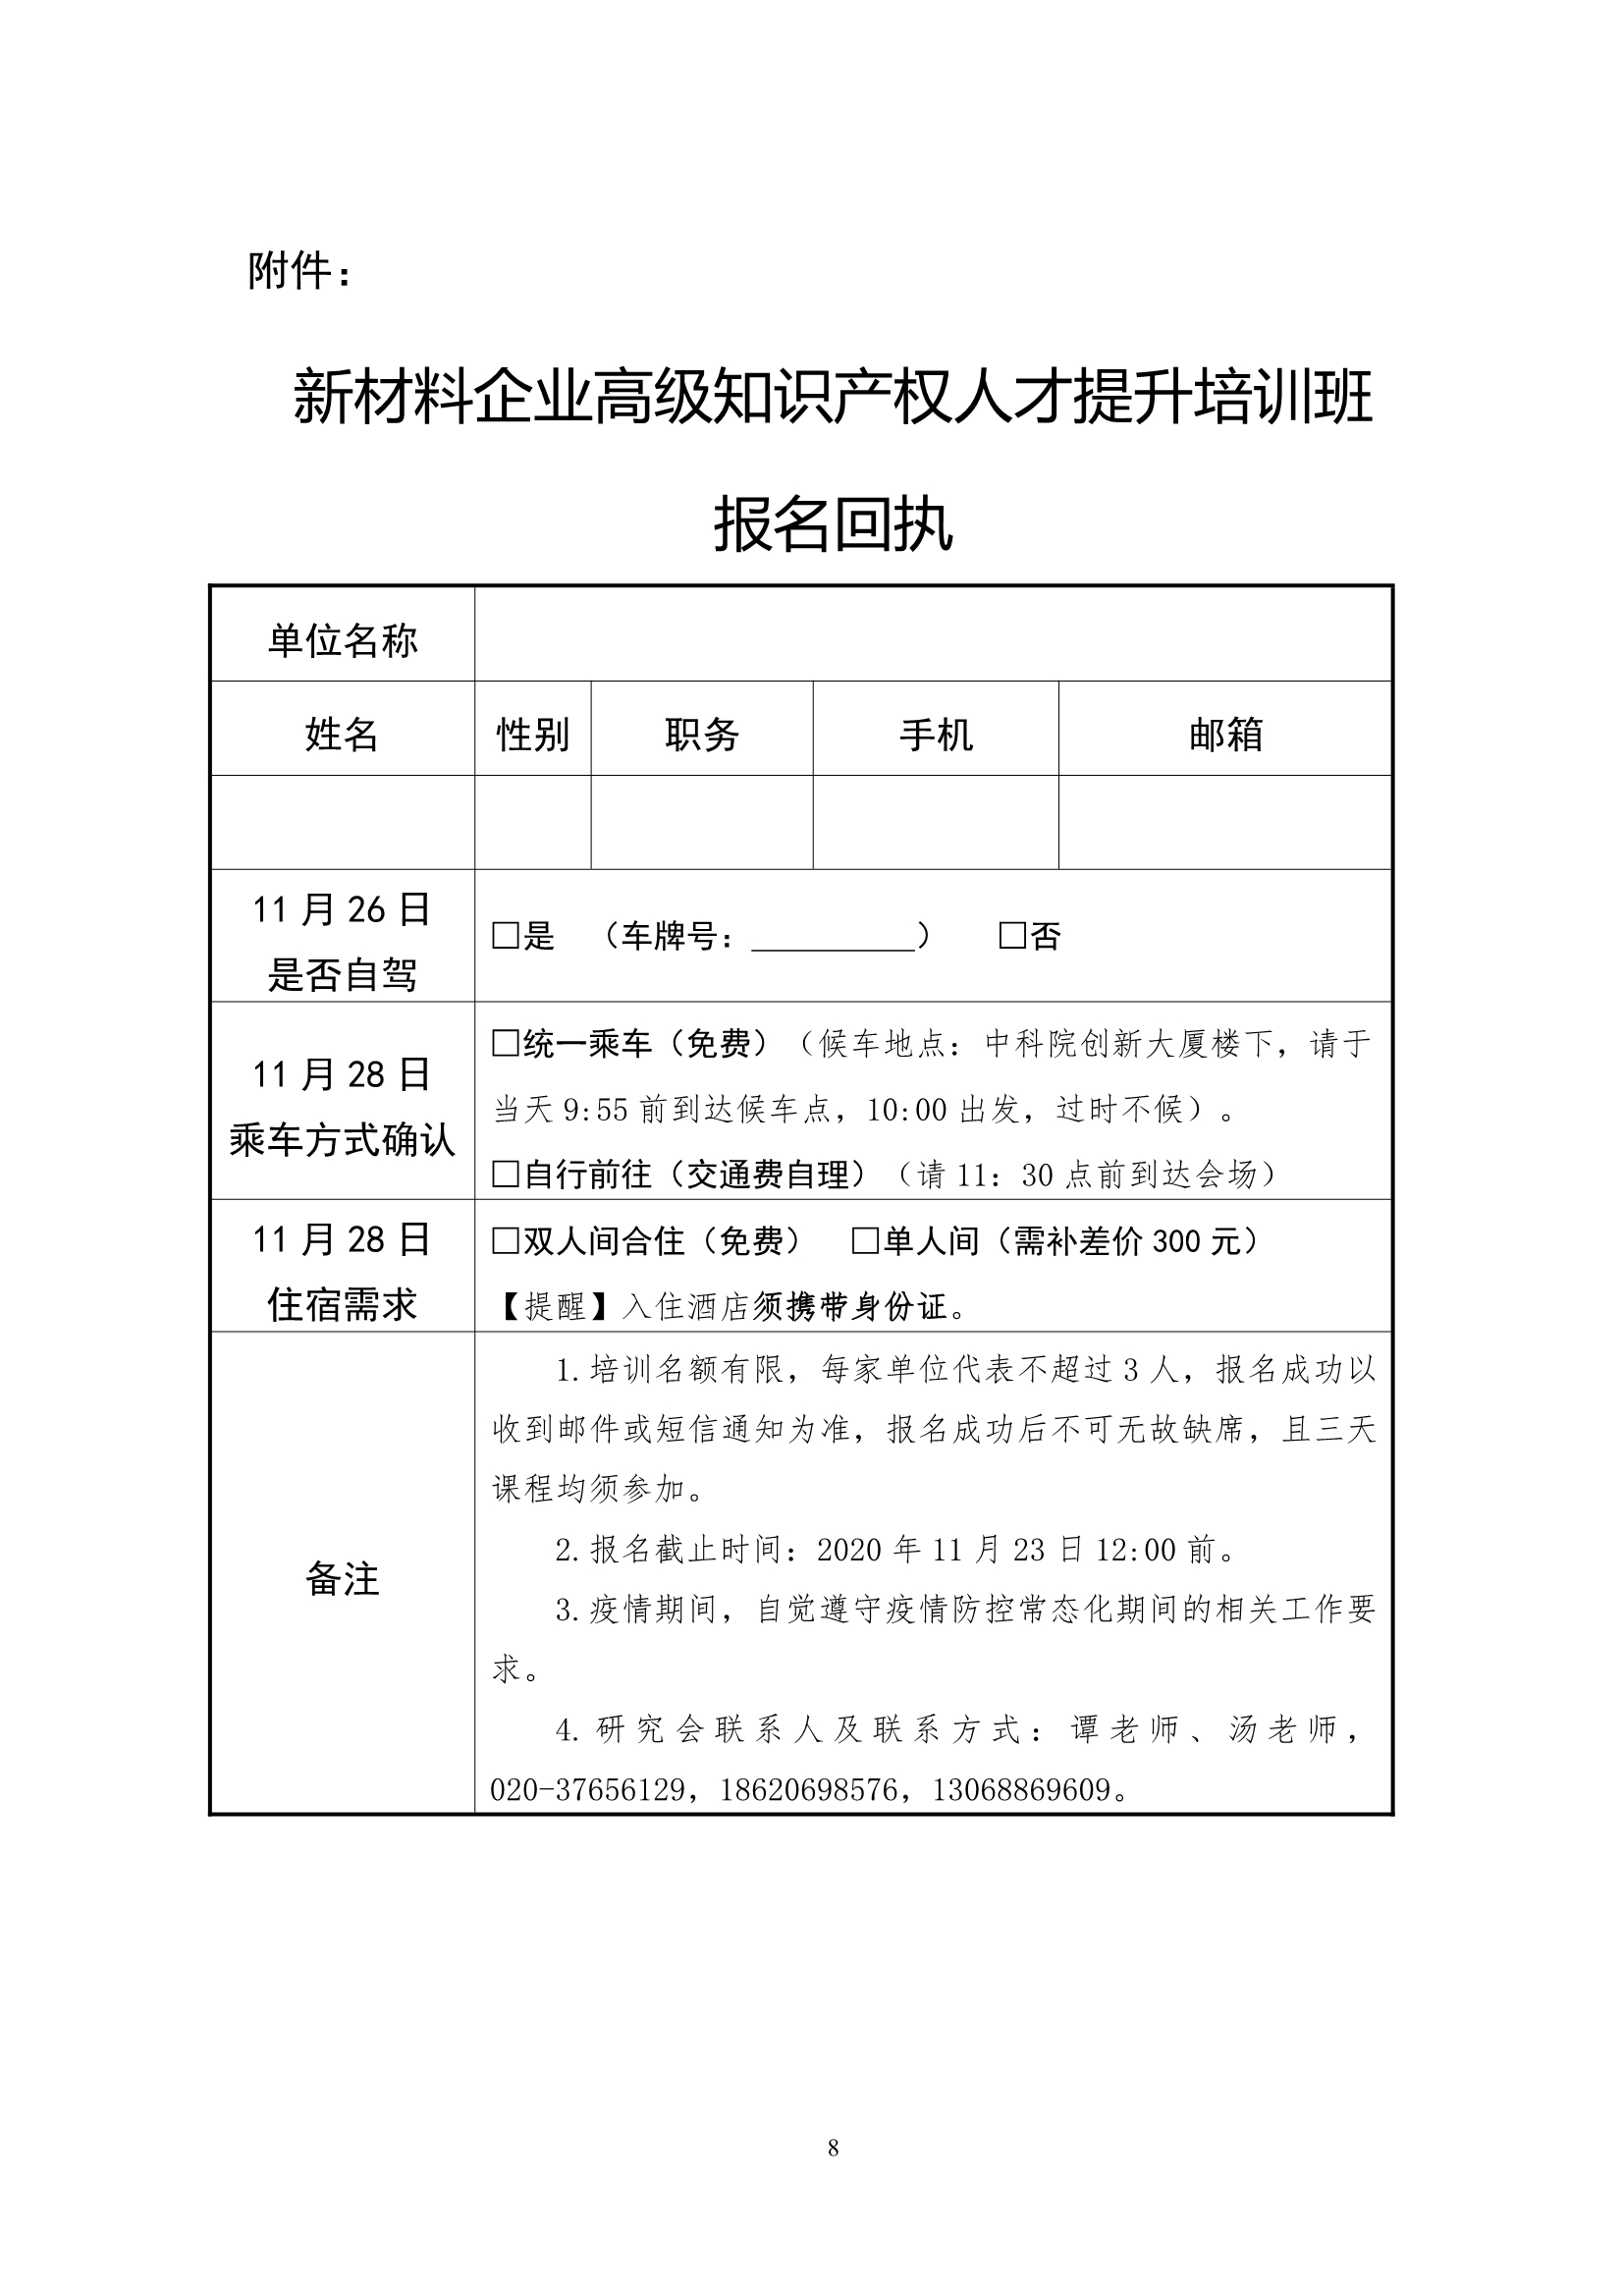 关于举办“2020广州知识产权保护中心新材料企业高级知识产权人才提升培训班”的通知